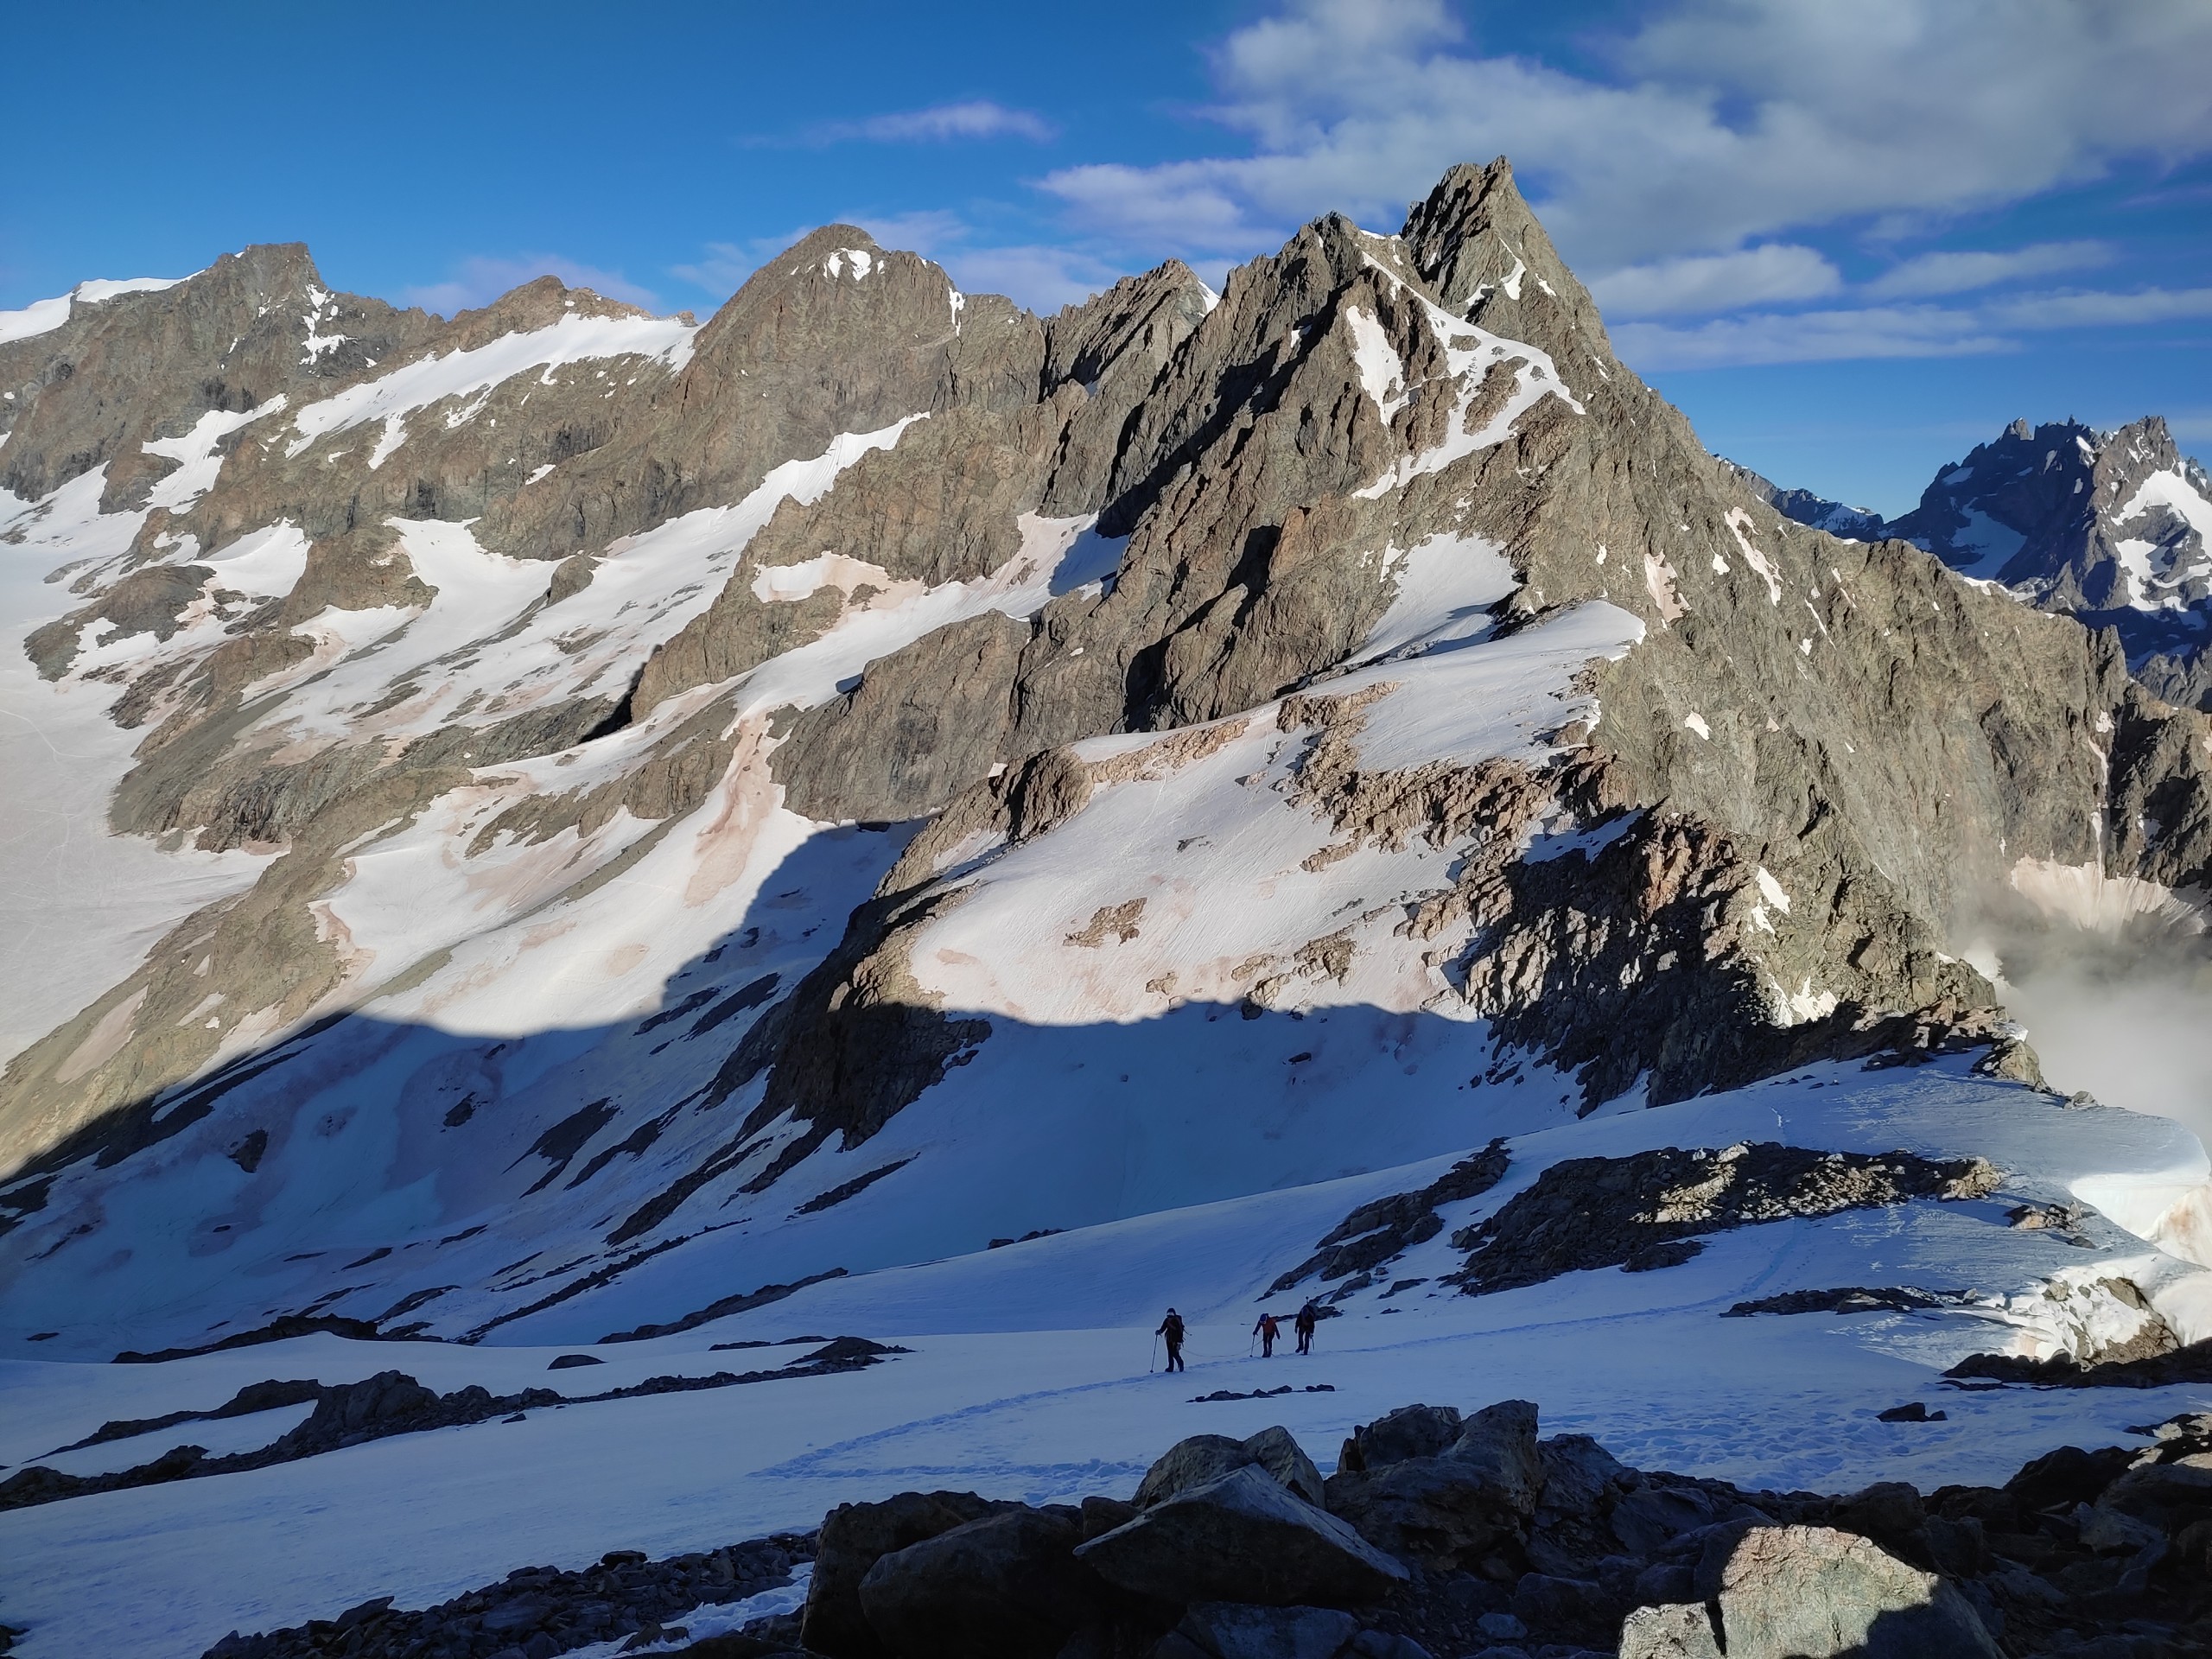 La montée du pic du glacier d'arsines pendant le stage initiation alpinisme